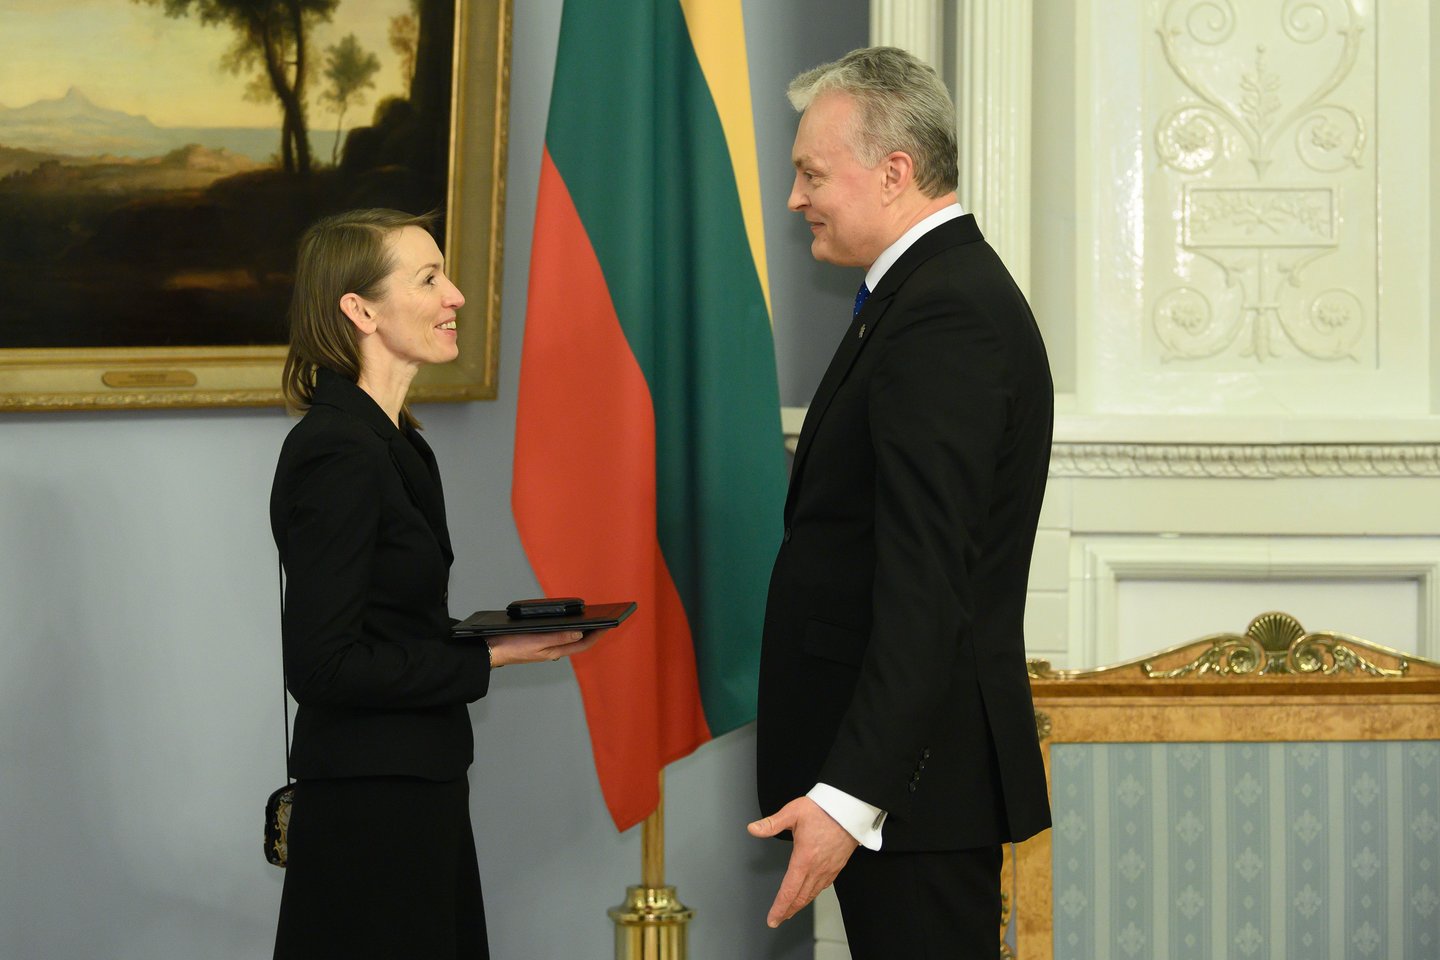 Vasario 13 d. Nacionalinę premiją Prezidentūroje iš šalies vadovo Gitano Nausėdos rankų turėjusi atsiimti aktorė Viktorija Kuodytė į rūmus įleista nebuvo.<br>V.Skaraičio nuotr.